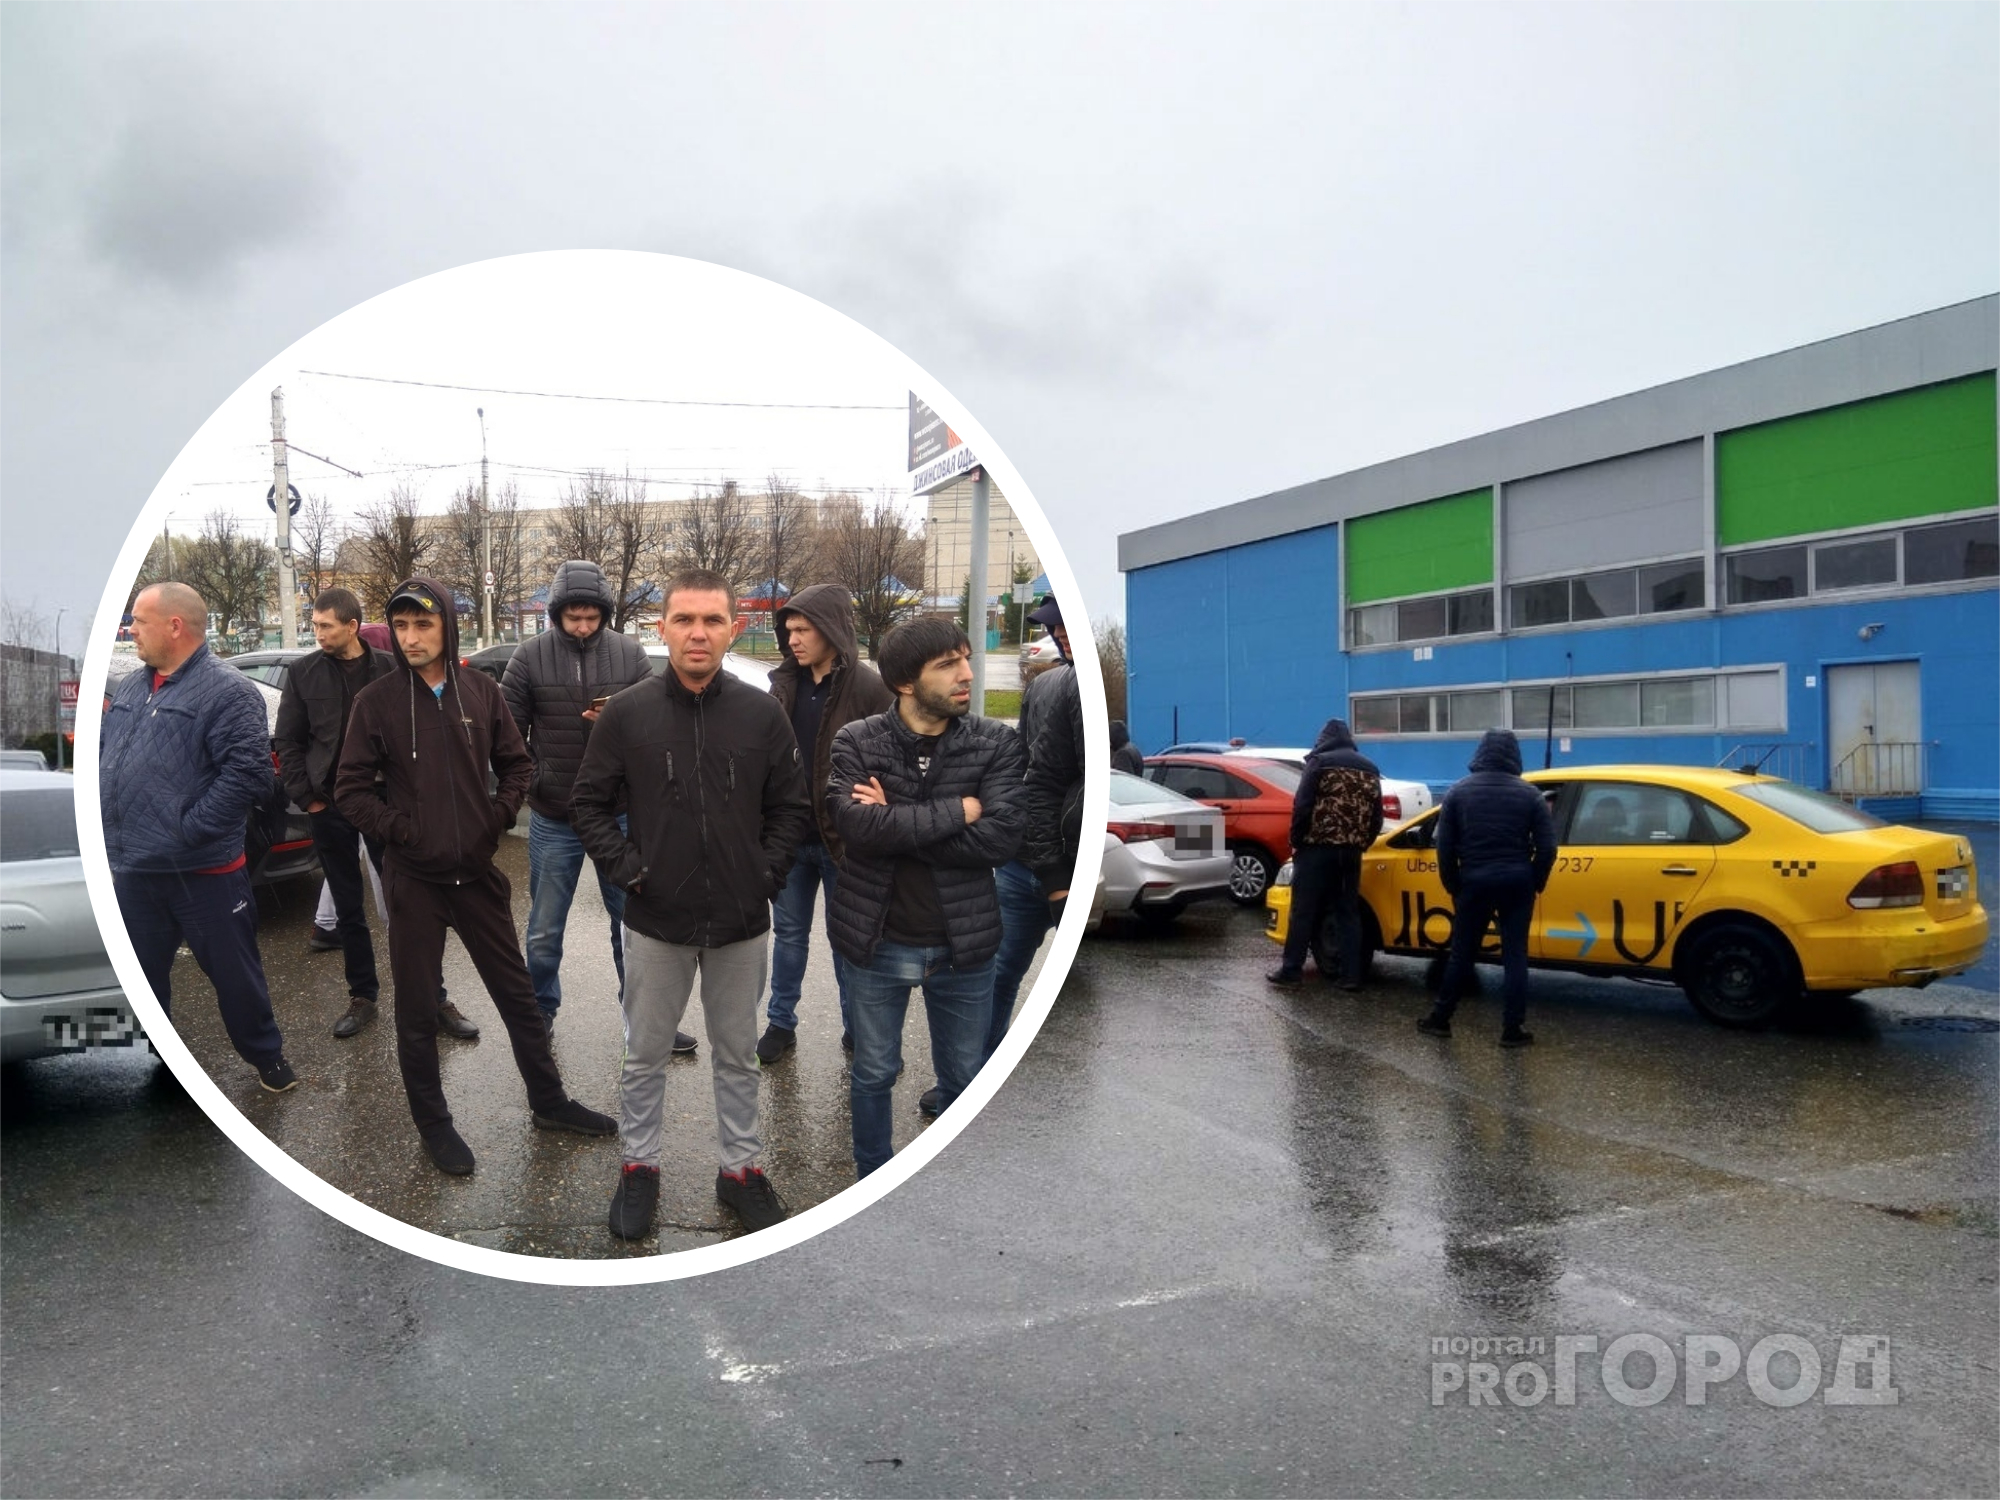 Таксисты "Яндекса" вышли на первомайскую забастовку против условий агрегатора